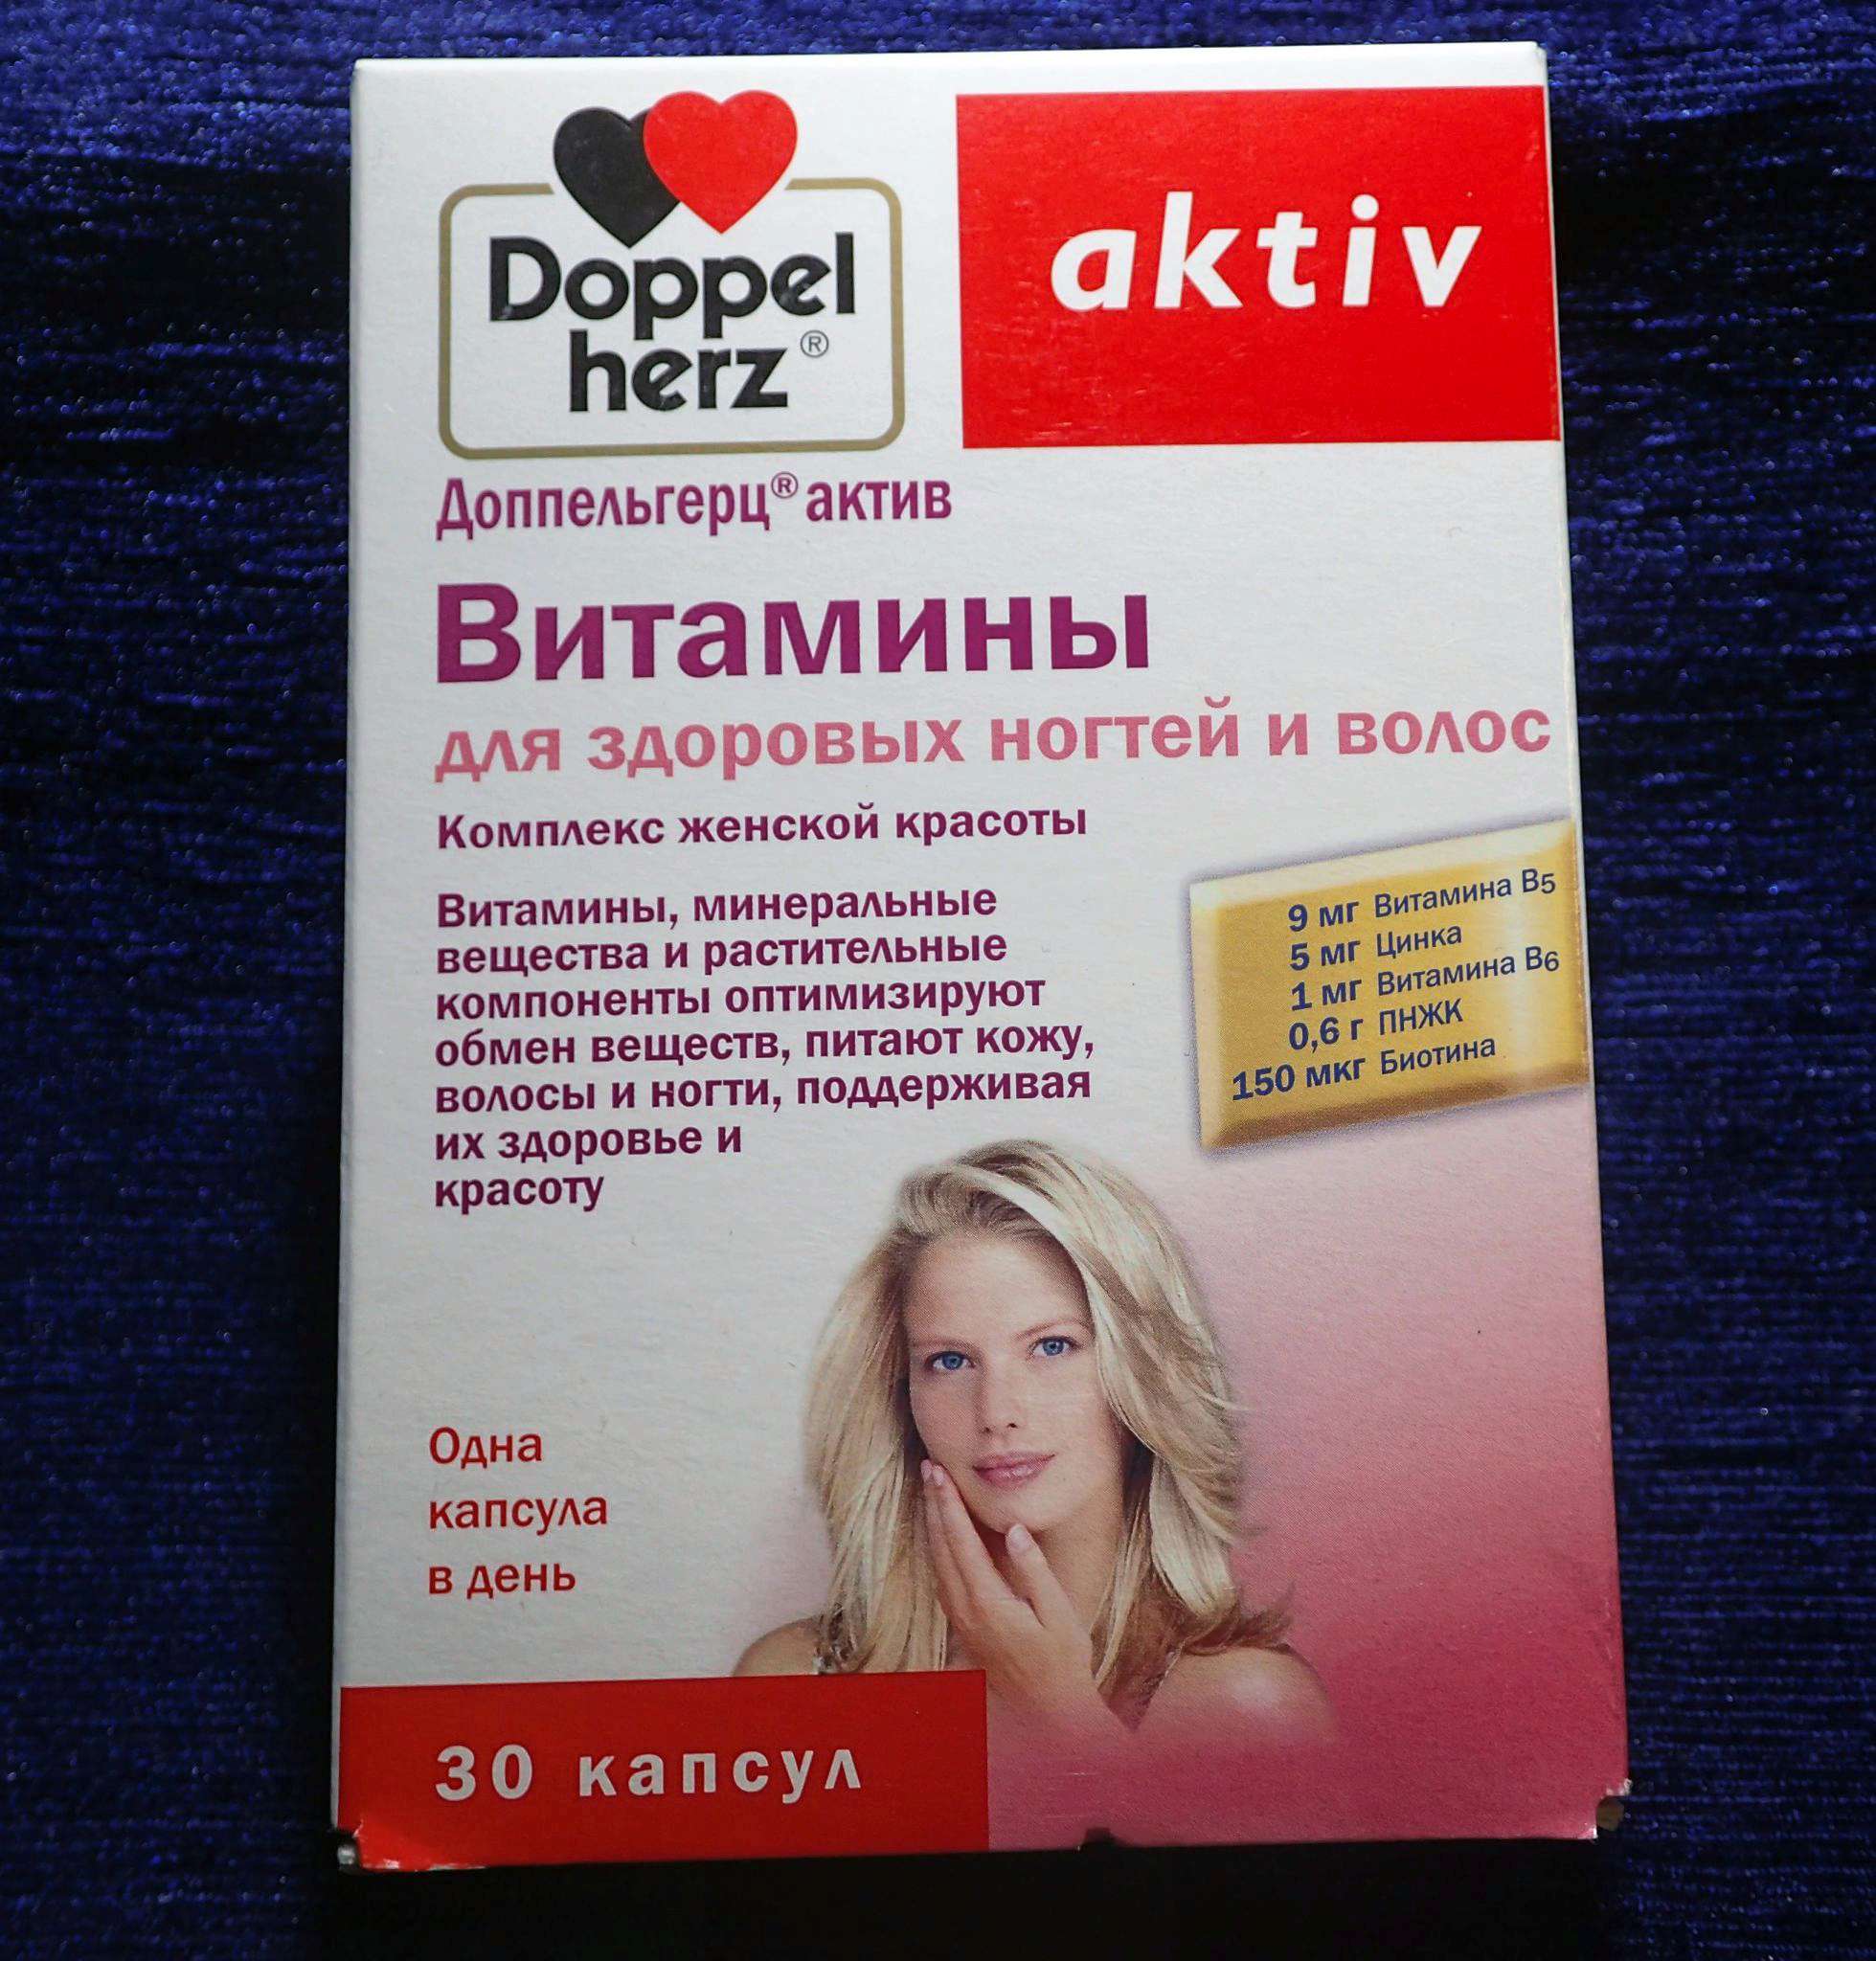 Витамины менопауза купить. Витаминно-минеральный комплекс для женщин Doppelherz. Doppel Herz aktiv витамины для волос. Доппельгерц Актив менопауза. Доппельгерц Актив витамины для женщин.